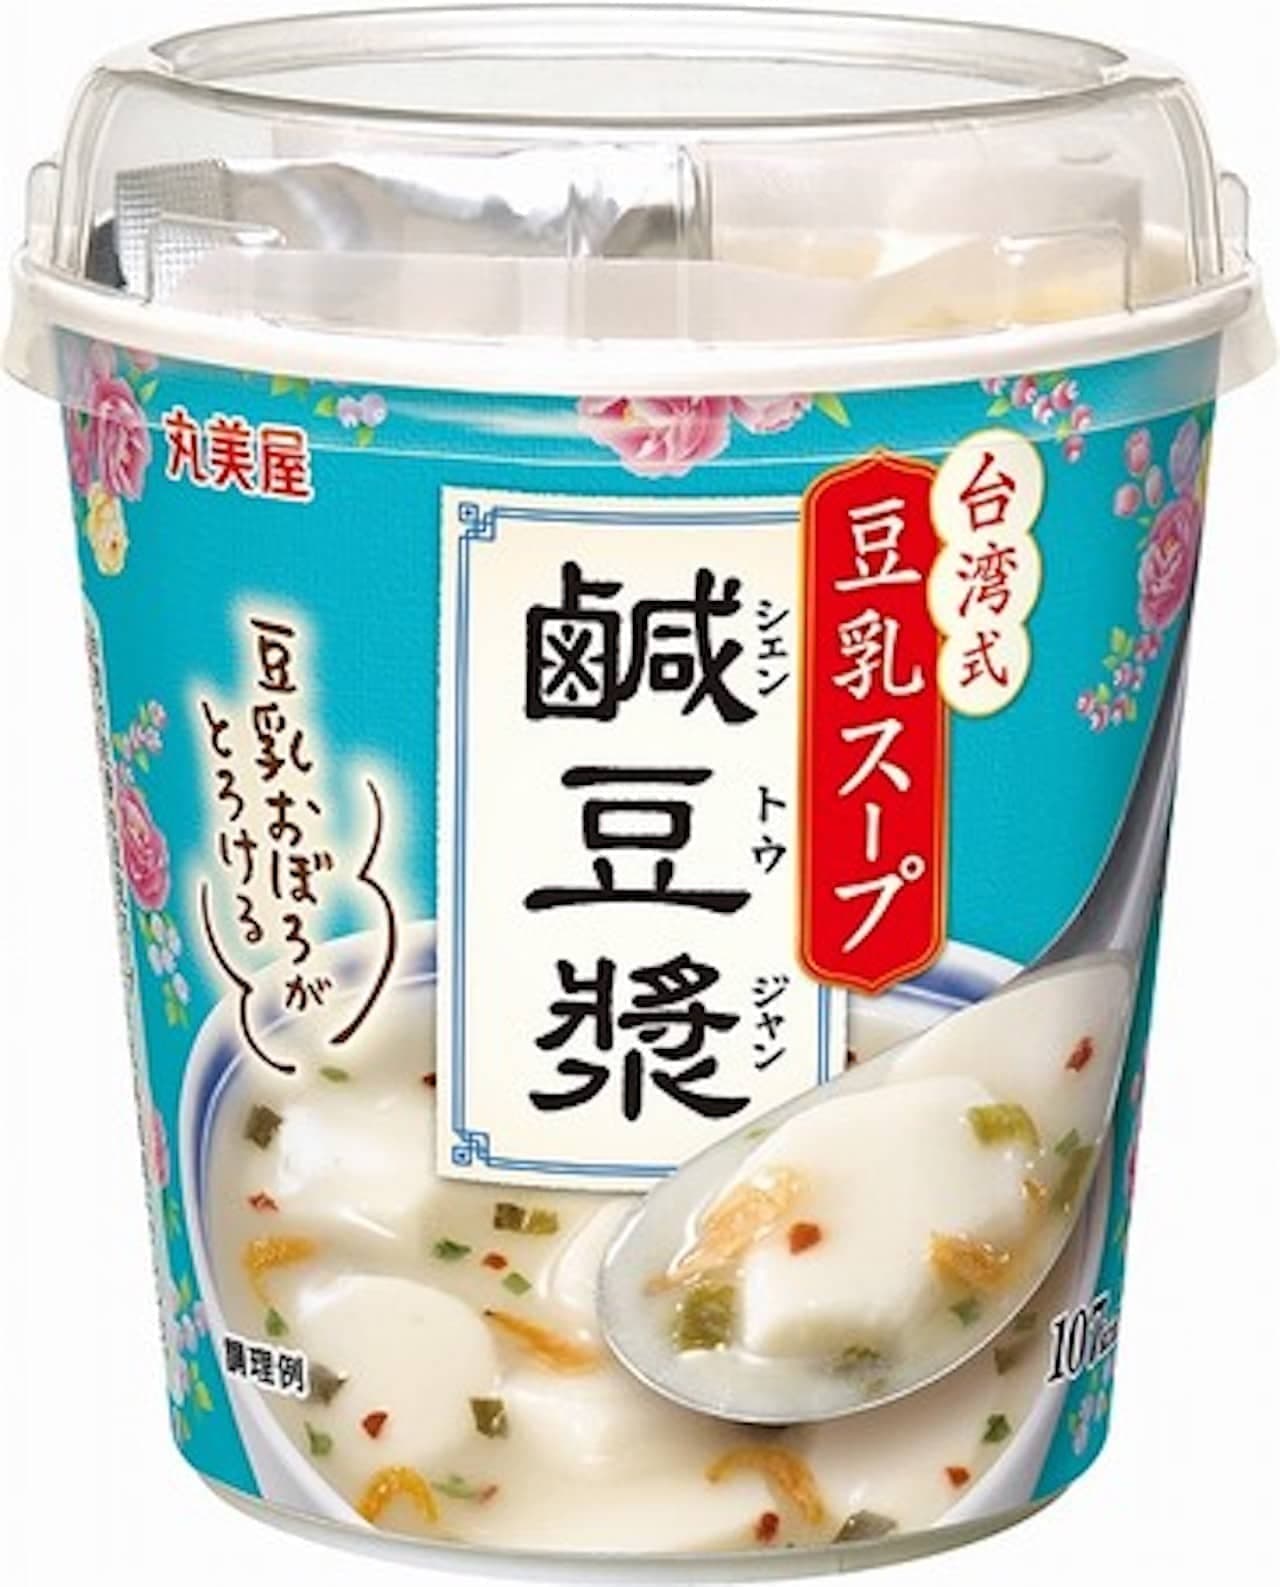 コンビニ「台湾式豆乳スープ シェントウジャン」